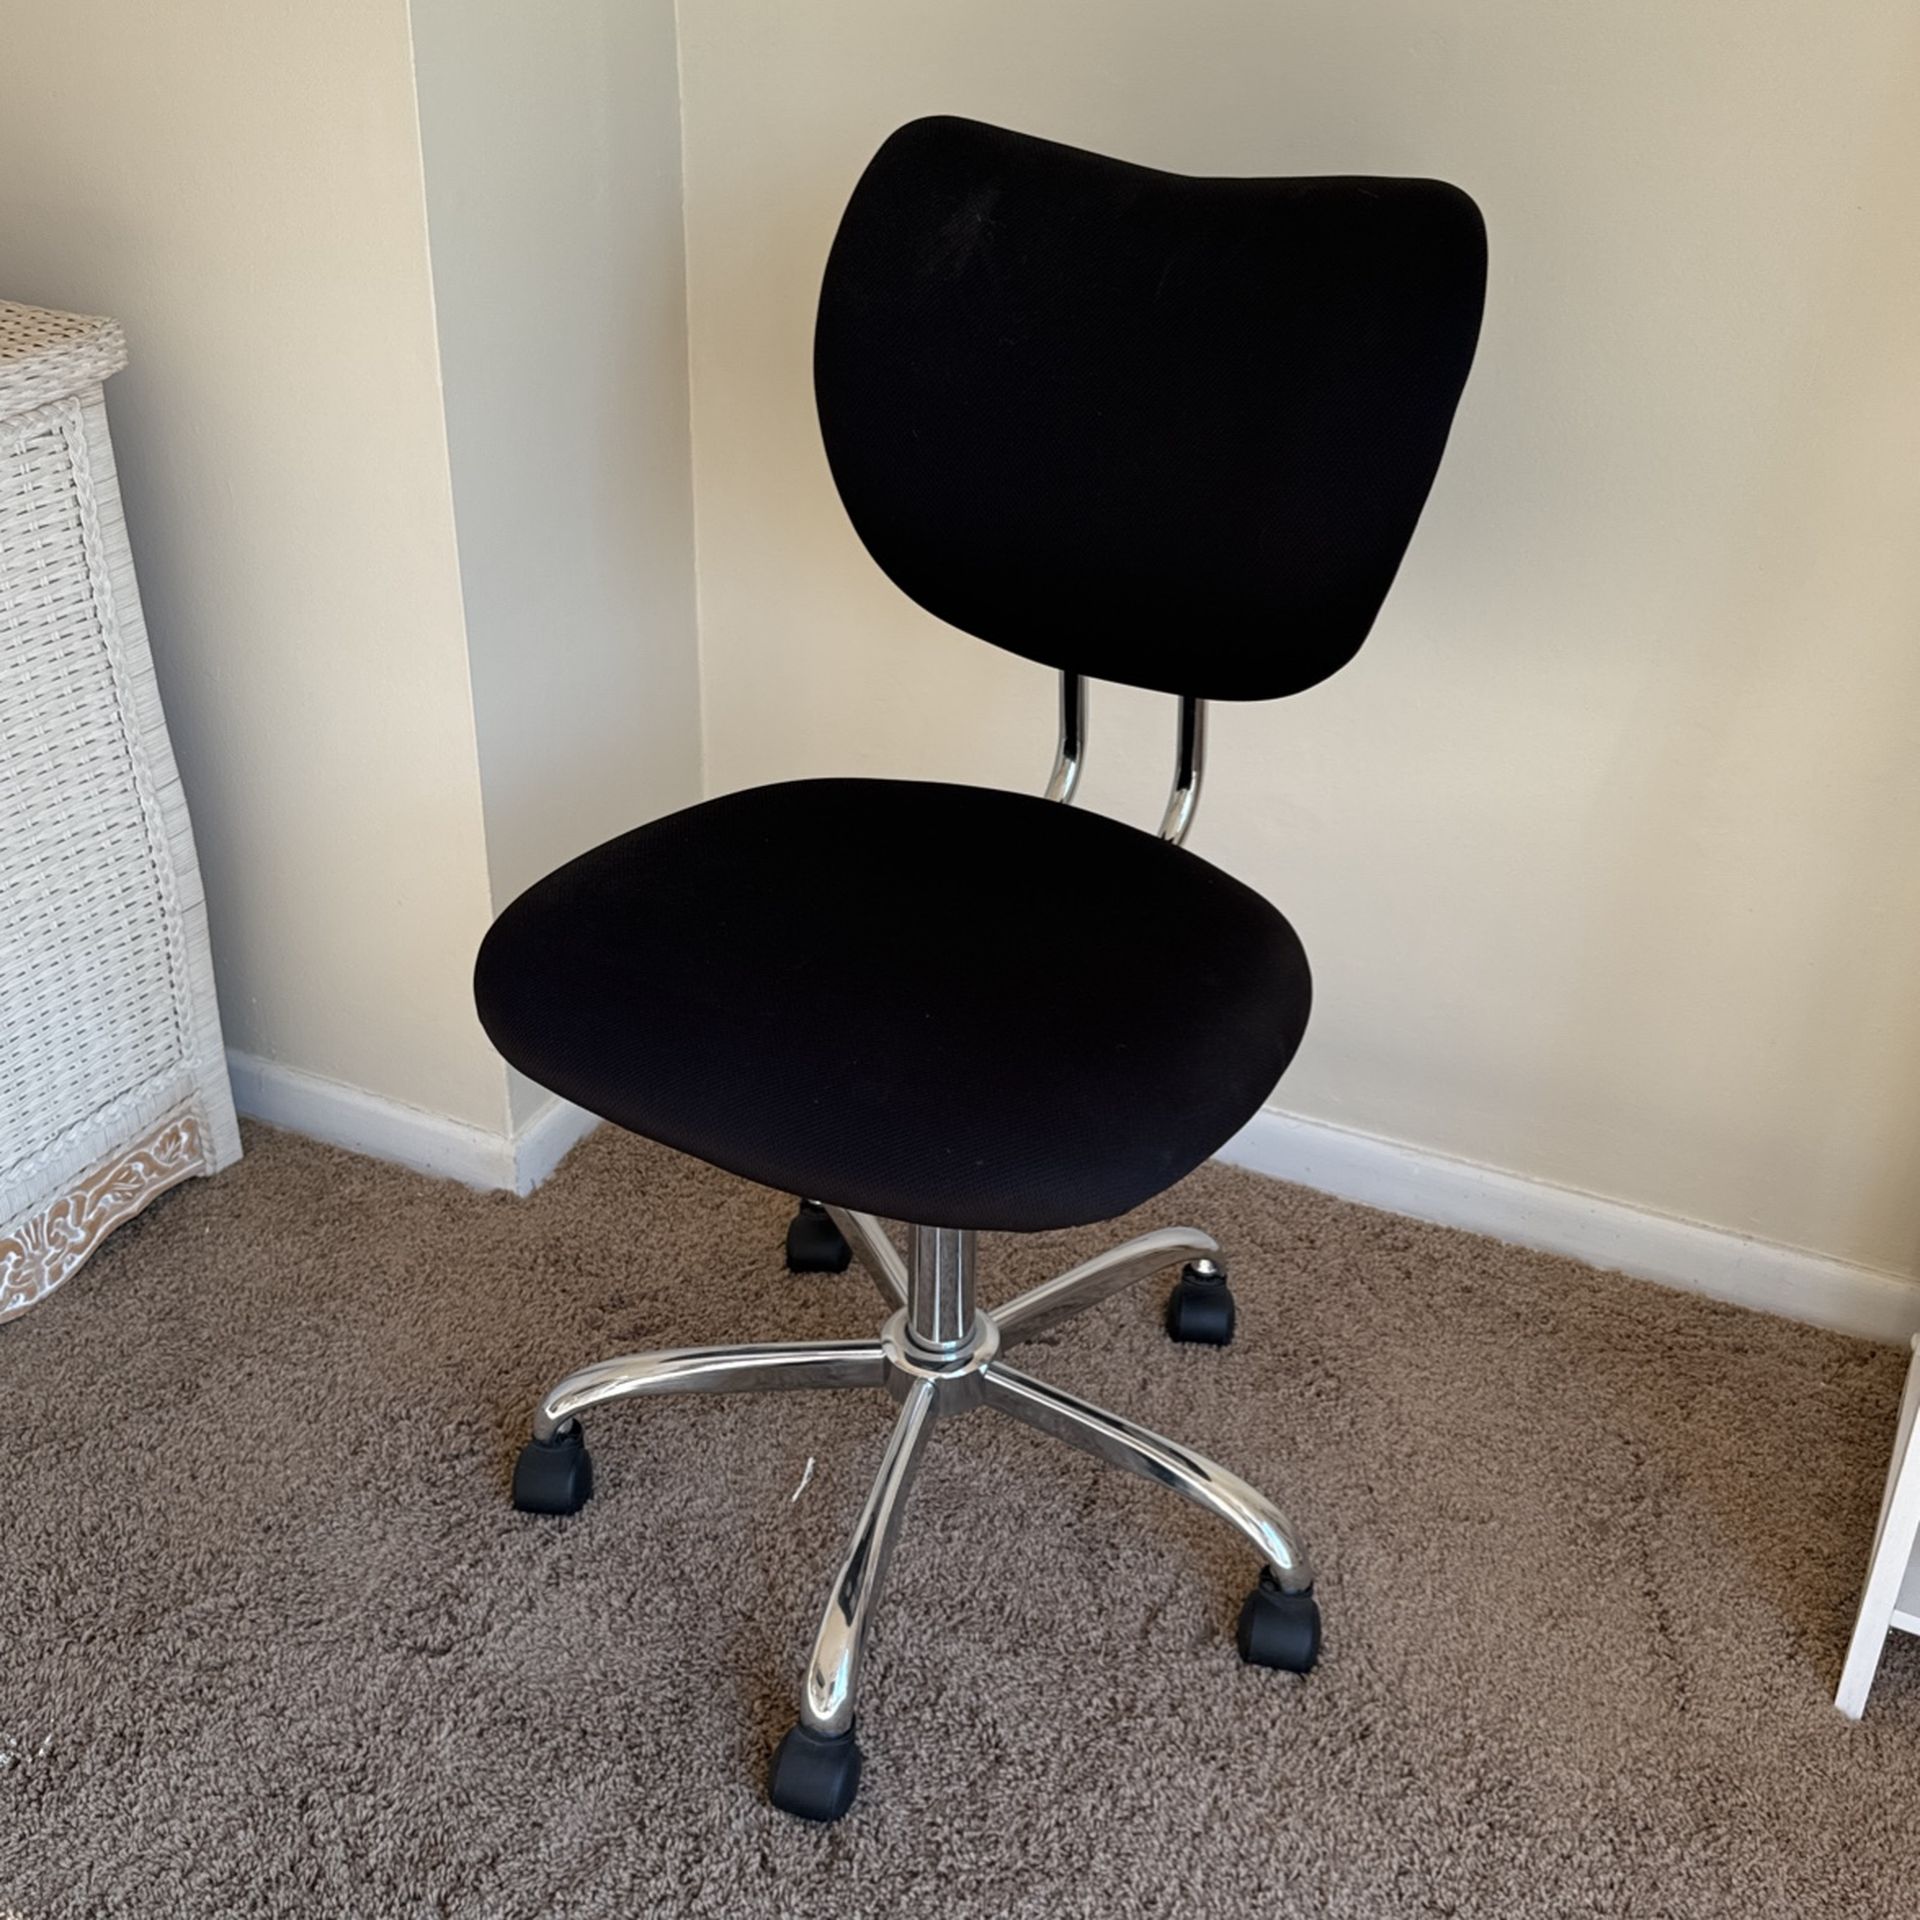 Branton Mobile Chair For Office Tasks